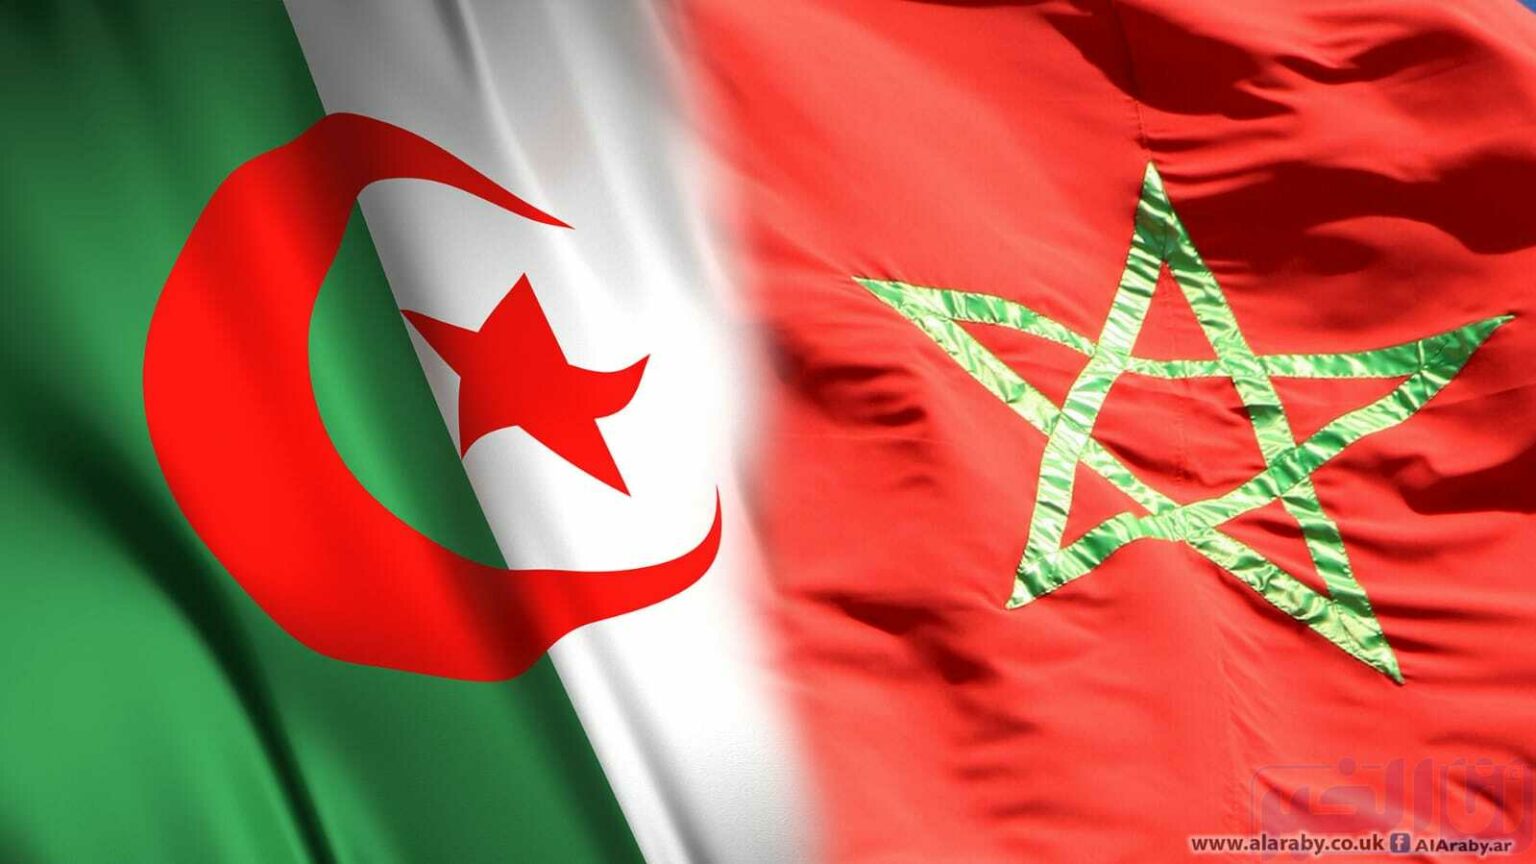 الجزائر توجه اتهامات جديدة إلى المغرب